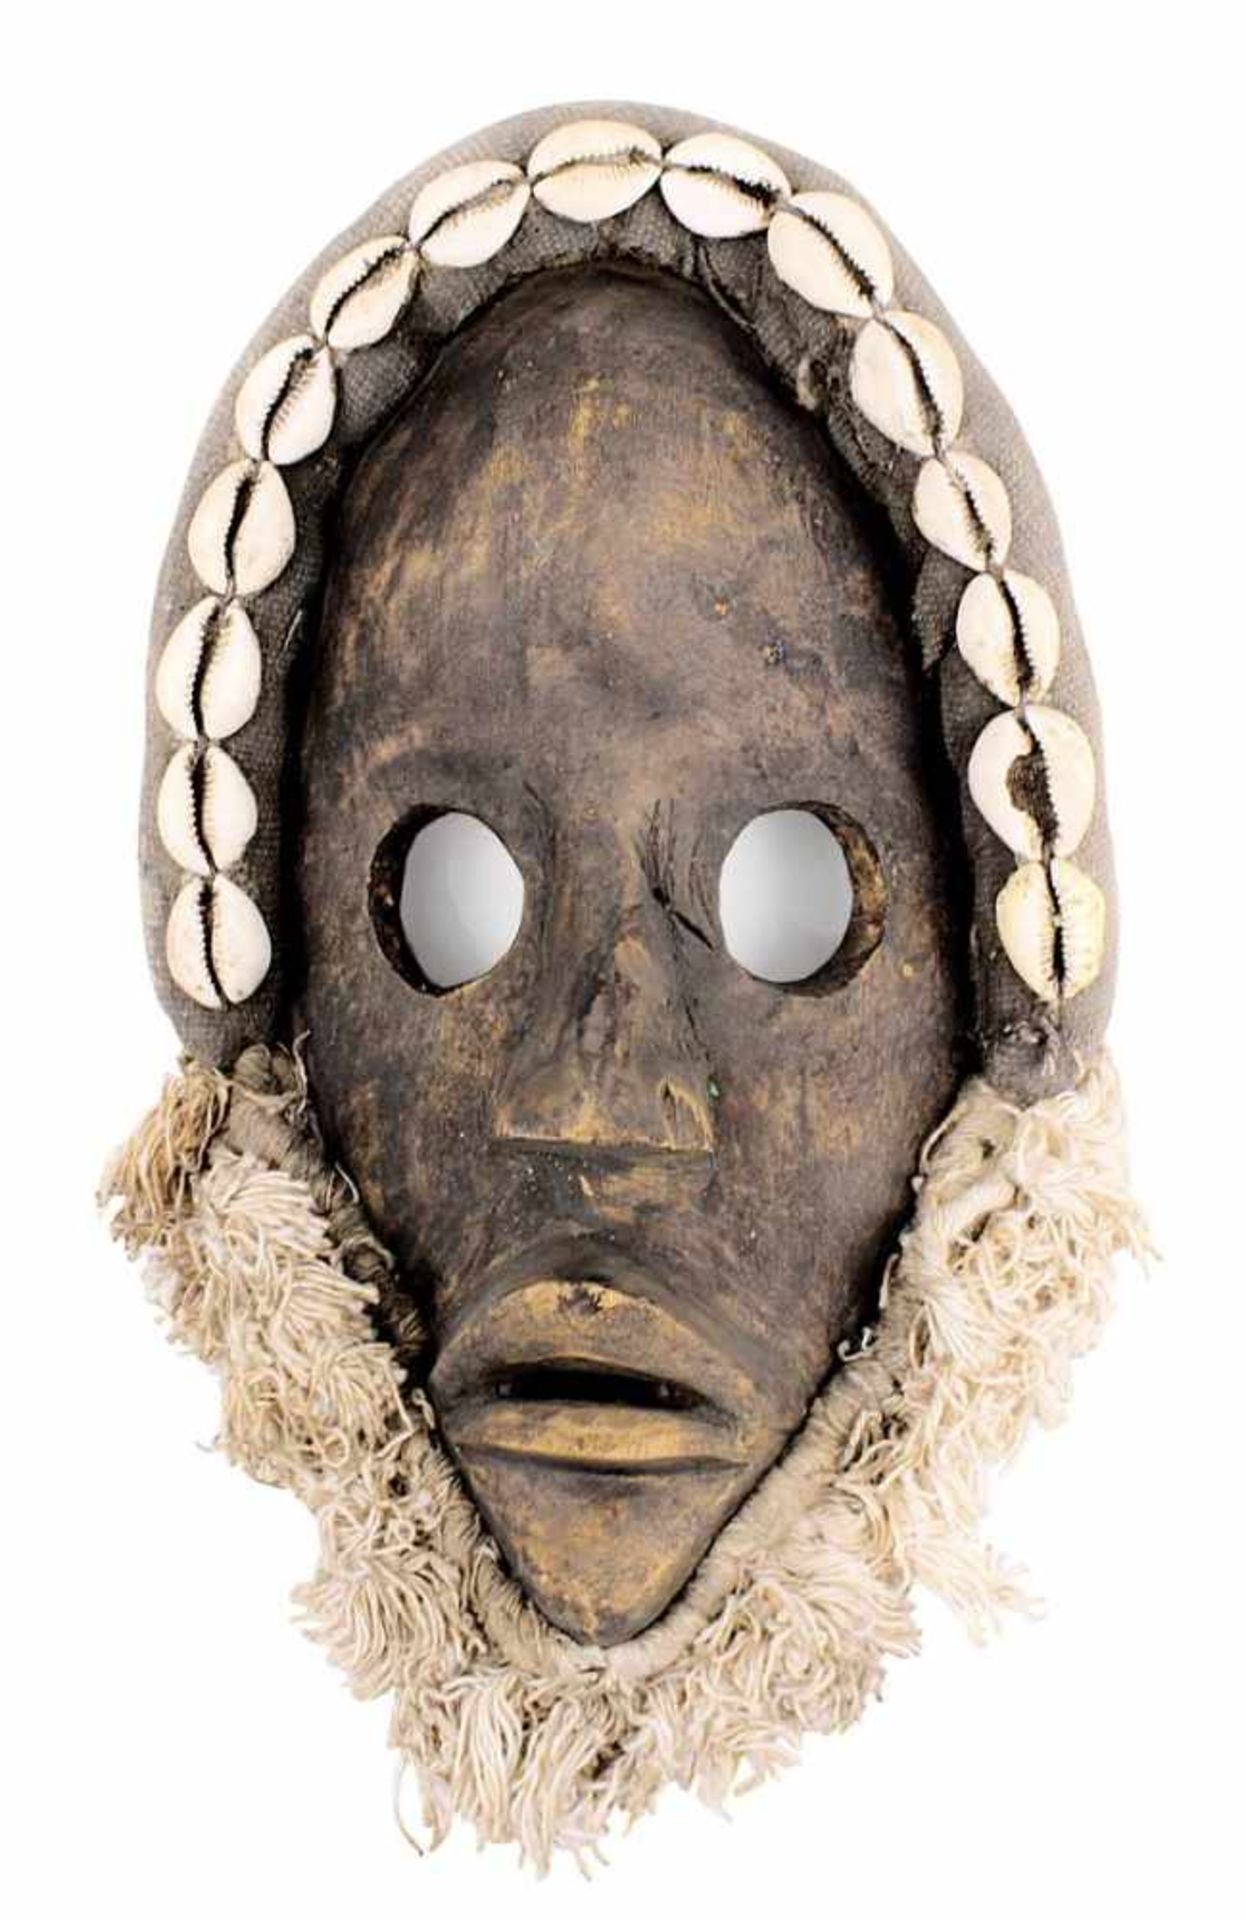 Maske zakpai der Dan, Côte d'Ivoire, Holz geschnitzt und dunkel gefärbt, Augen rund